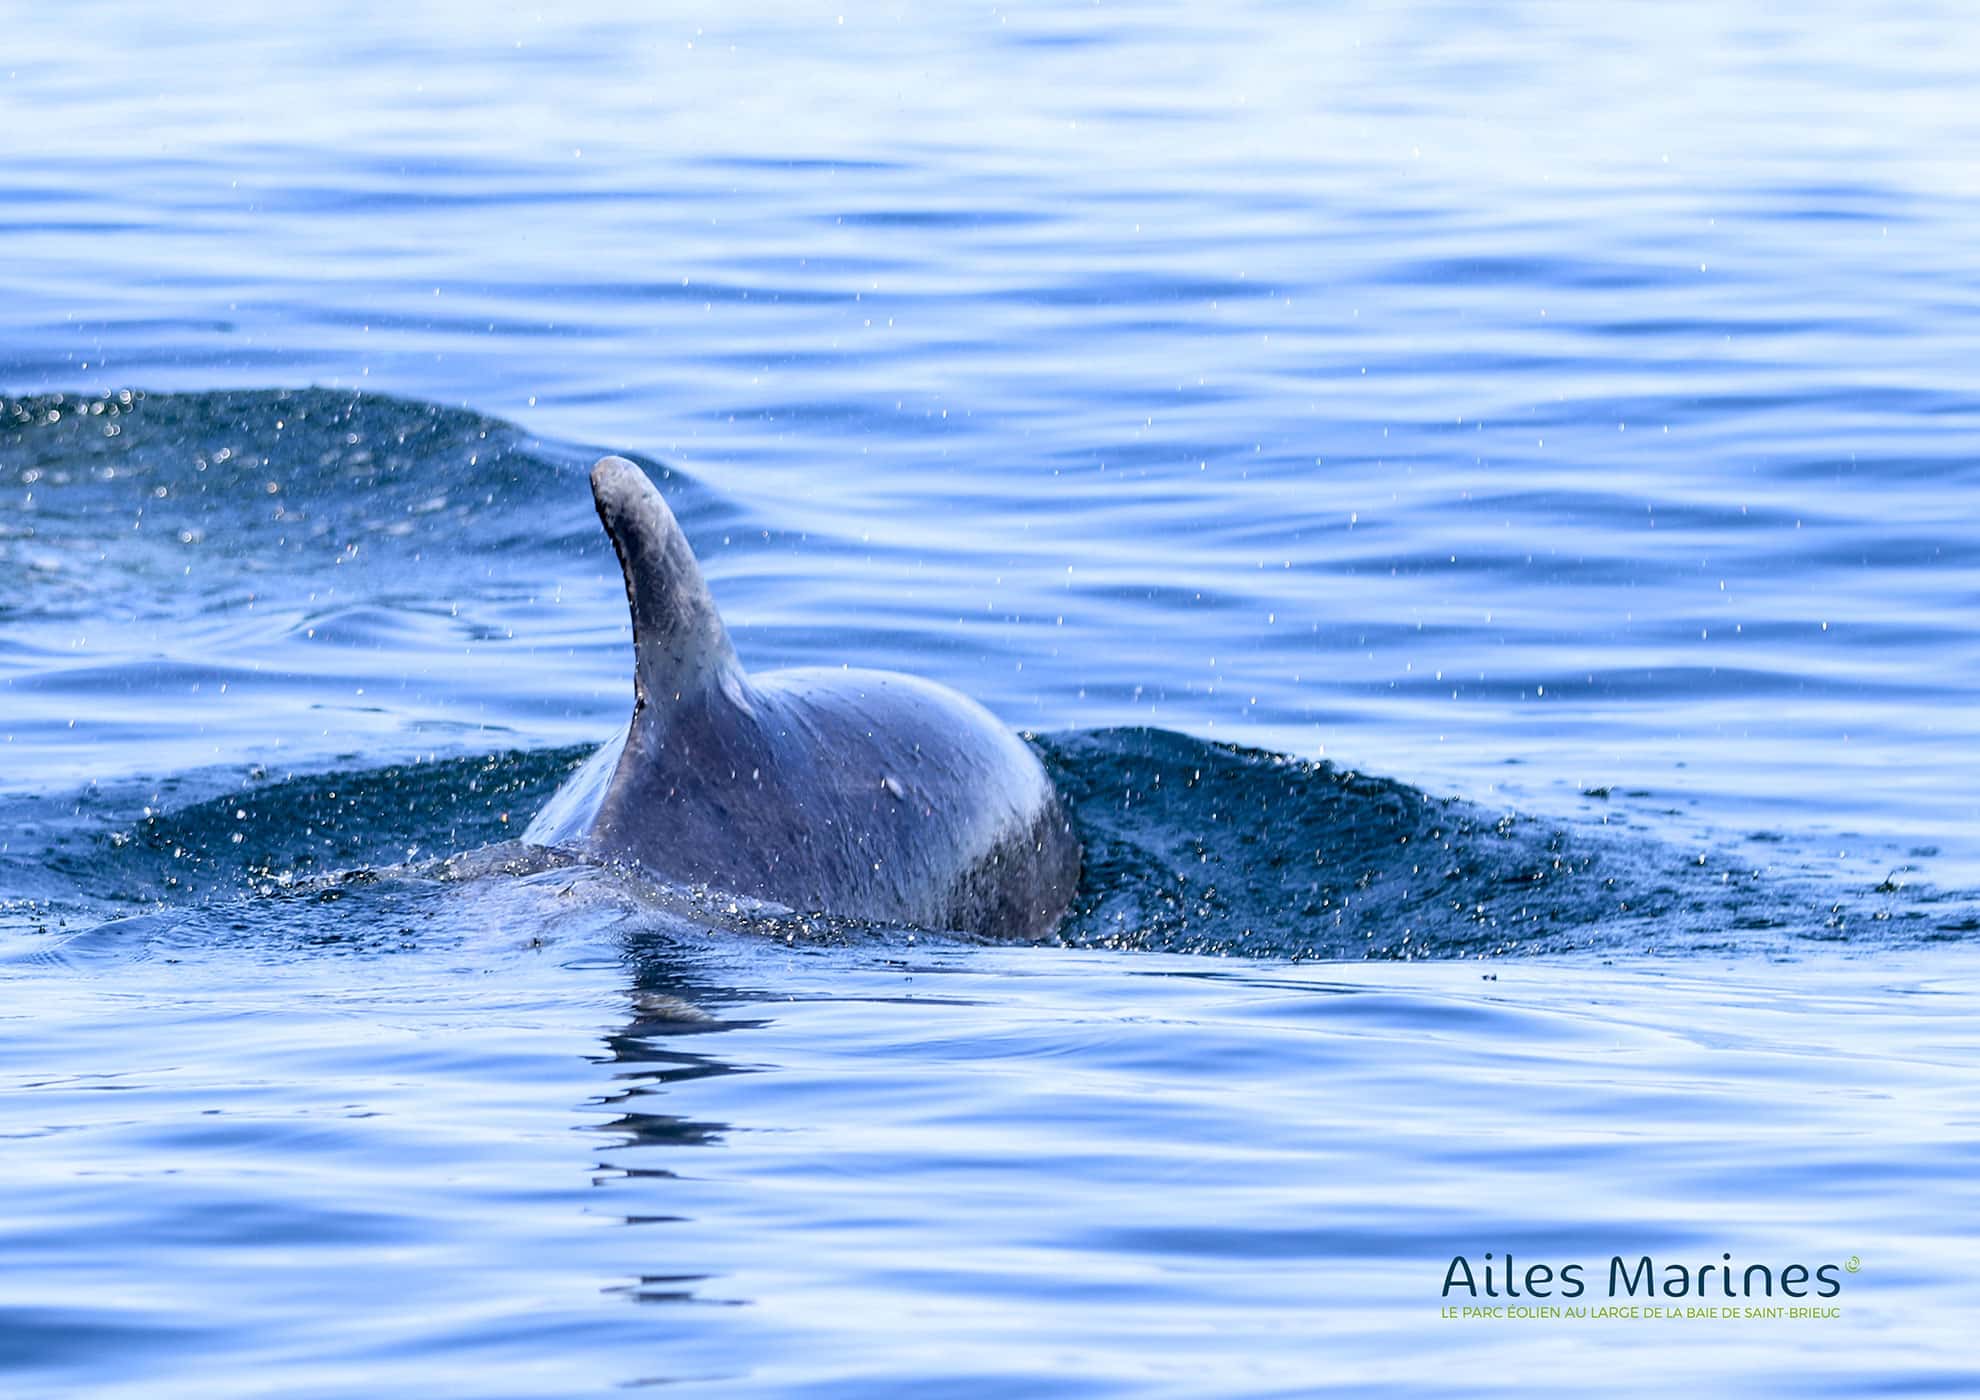 ailes-marines-sea-dolphin-backed dolphin